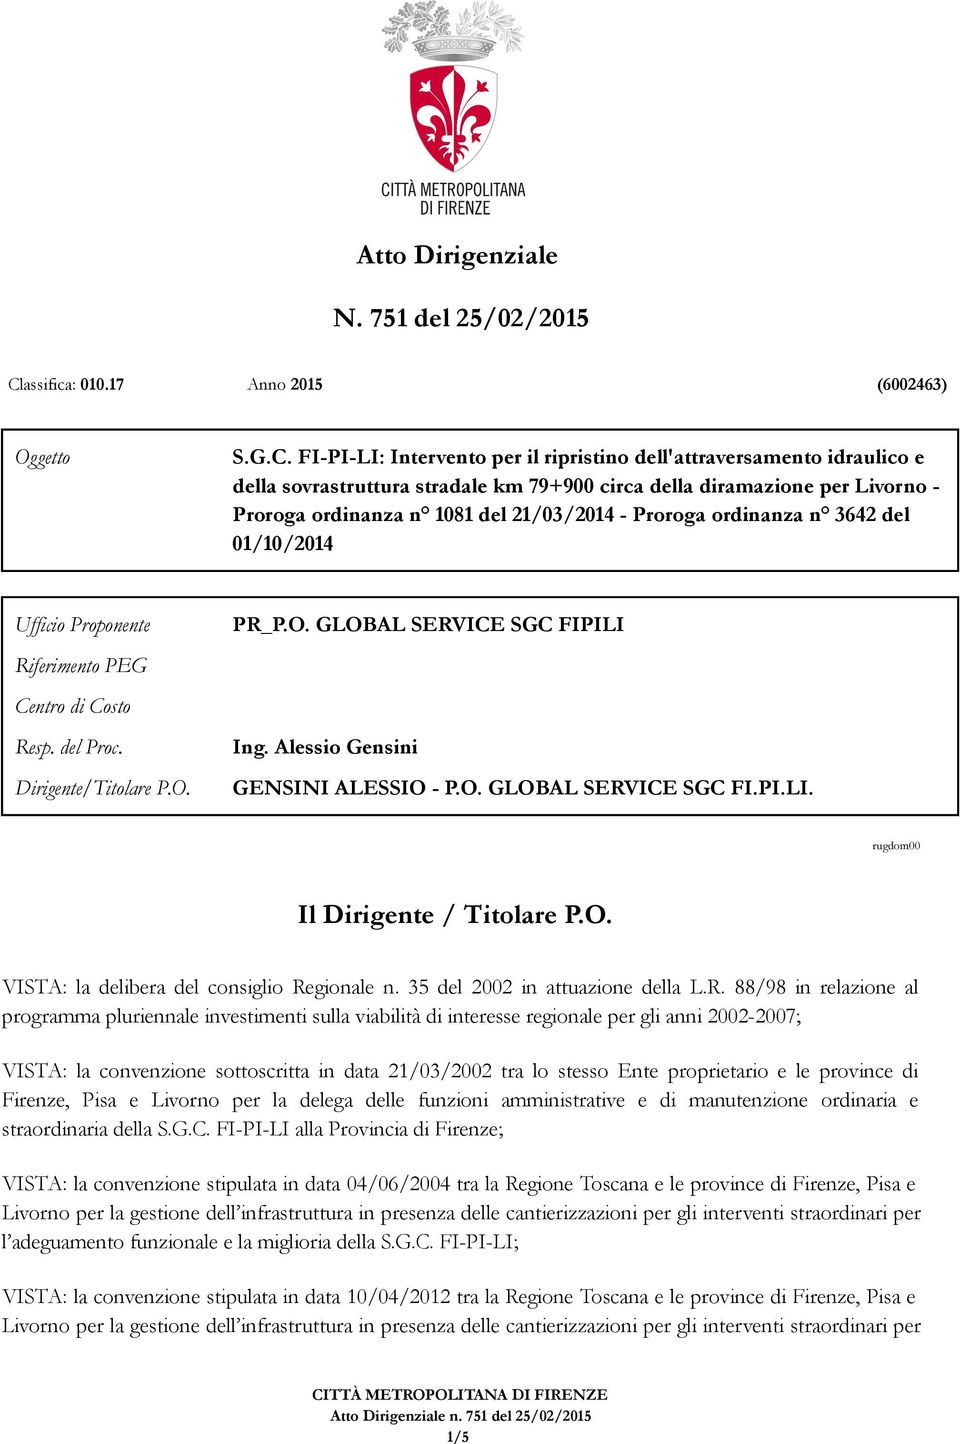 FI-PI-LI: Intervento per il ripristino dell'attraversamento idraulico e della sovrastruttura stradale km 79+900 circa della diramazione per Livorno - Proroga ordinanza n 1081 del 21/03/2014 - Proroga